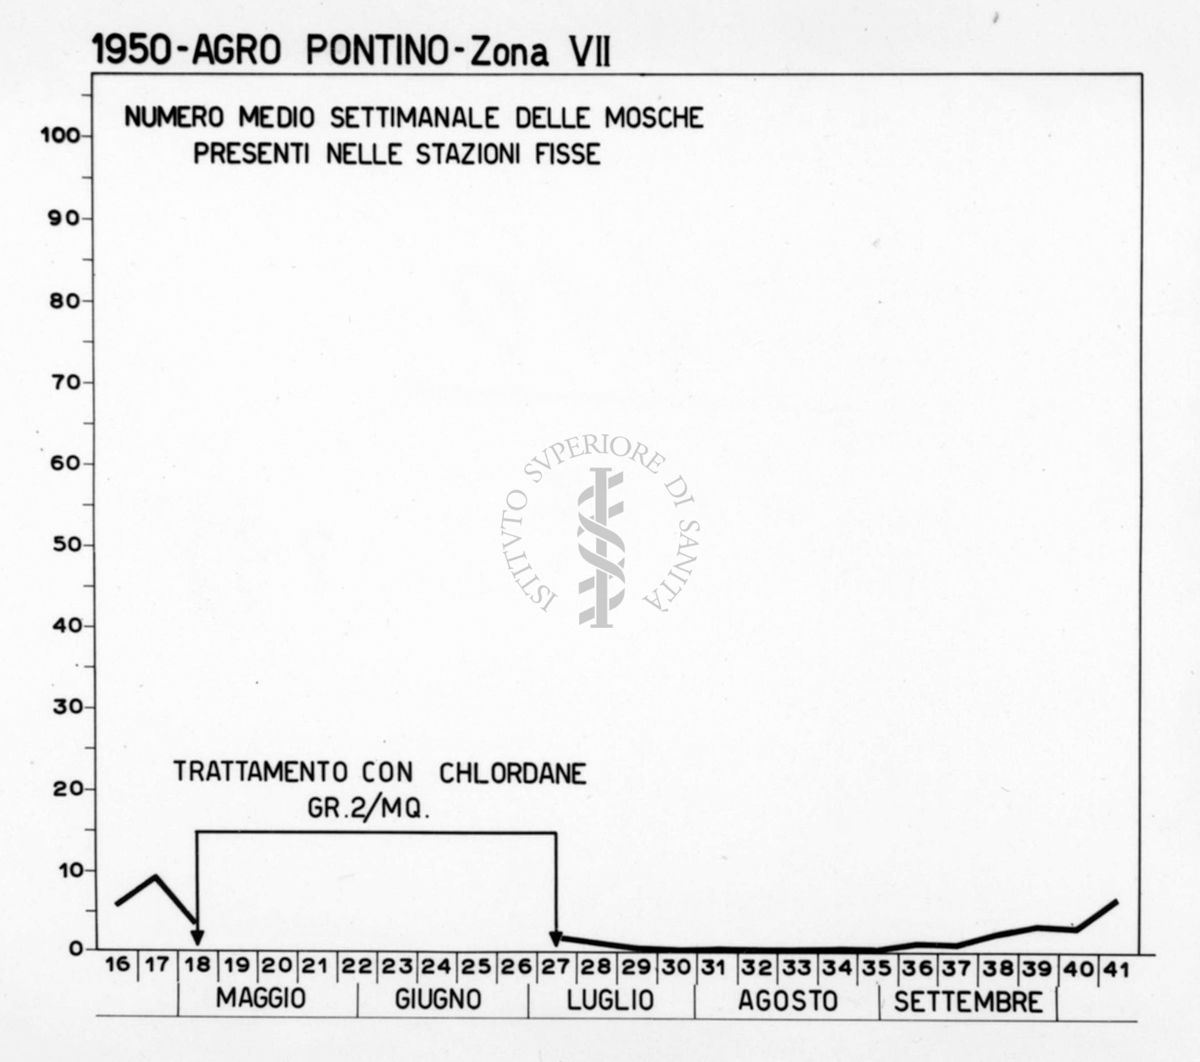 Diagramma riguardante il numero medio settimanale delle mosche presenti nelle stazioni fisse dell'Agro Pontino nel 1950 VII Zona